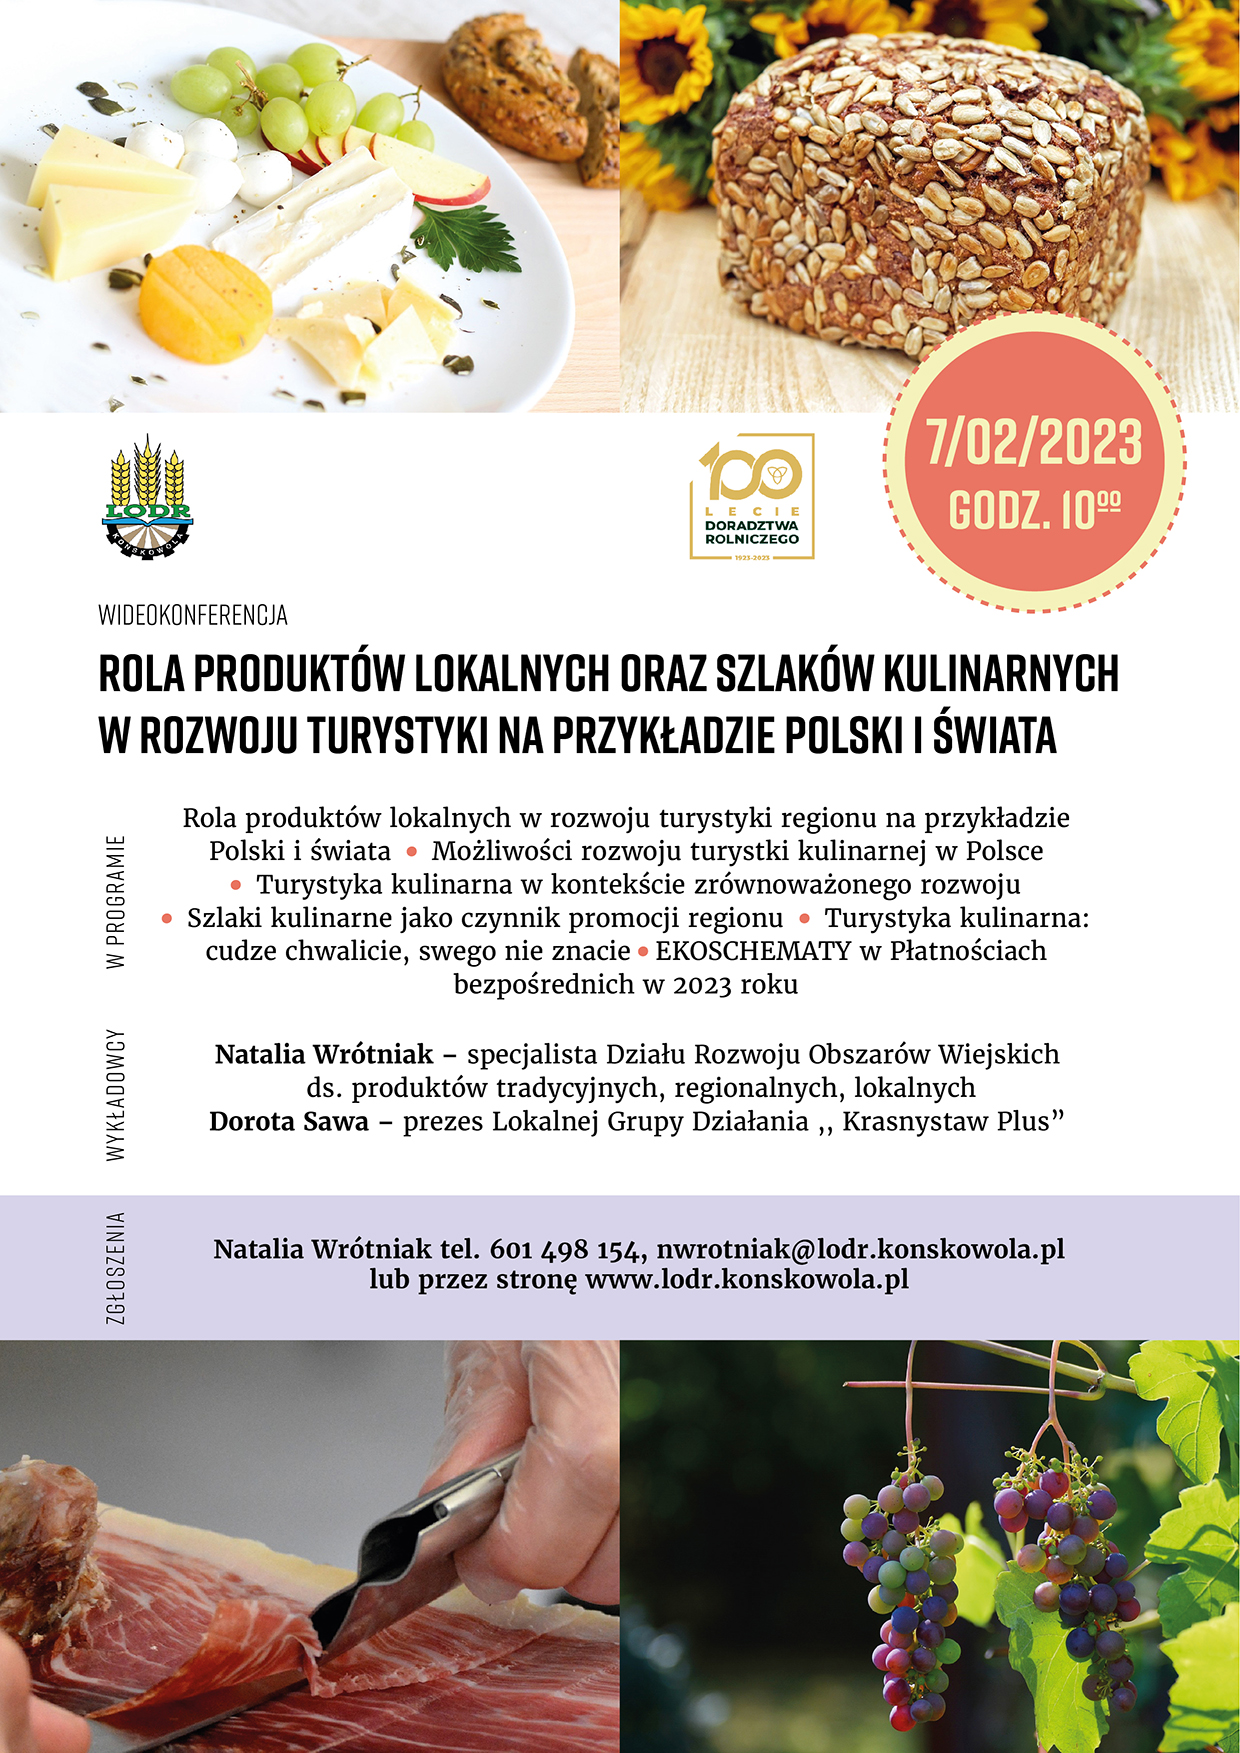 Rola produktów lokalnych oraz szlaków kulinarnych w rozwoju turystyki na przykładzie Polski i świata - plakat